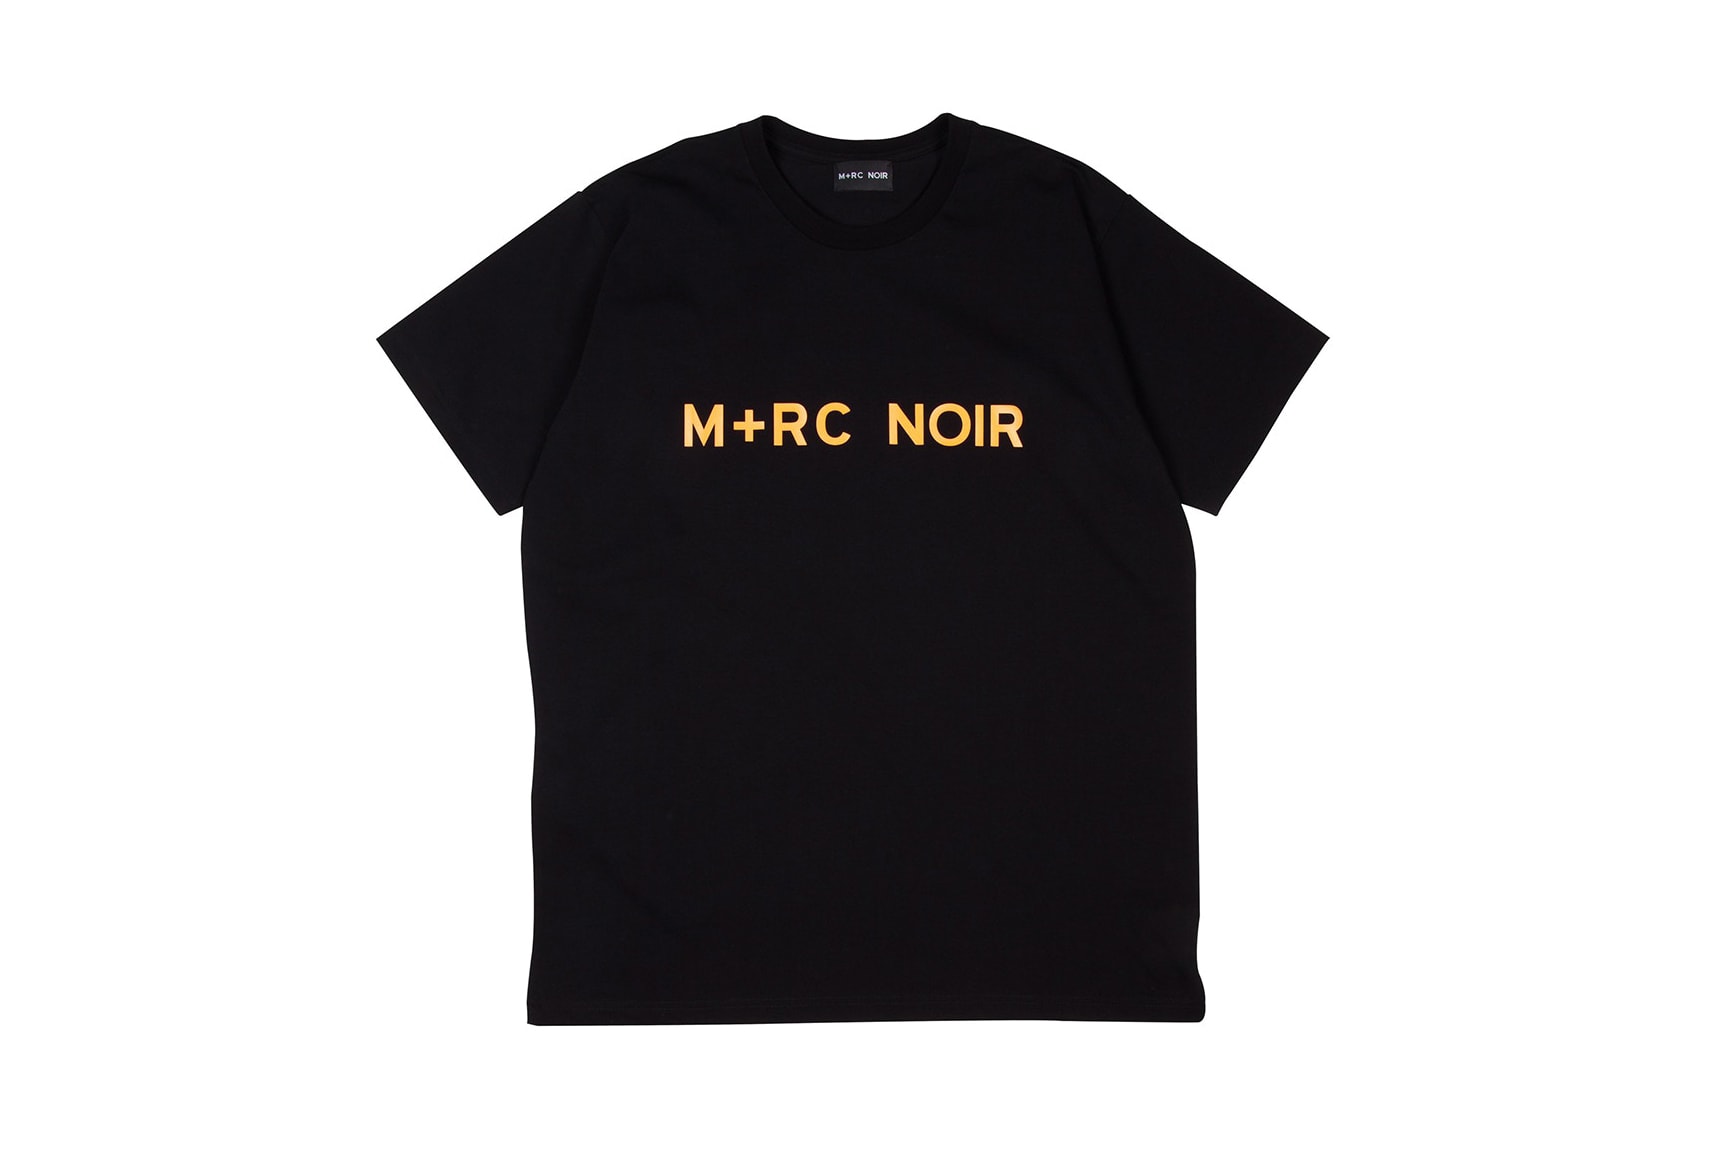 M+RC Noir Fall Winter 2017 Second Drop December 26 2017 Online Release